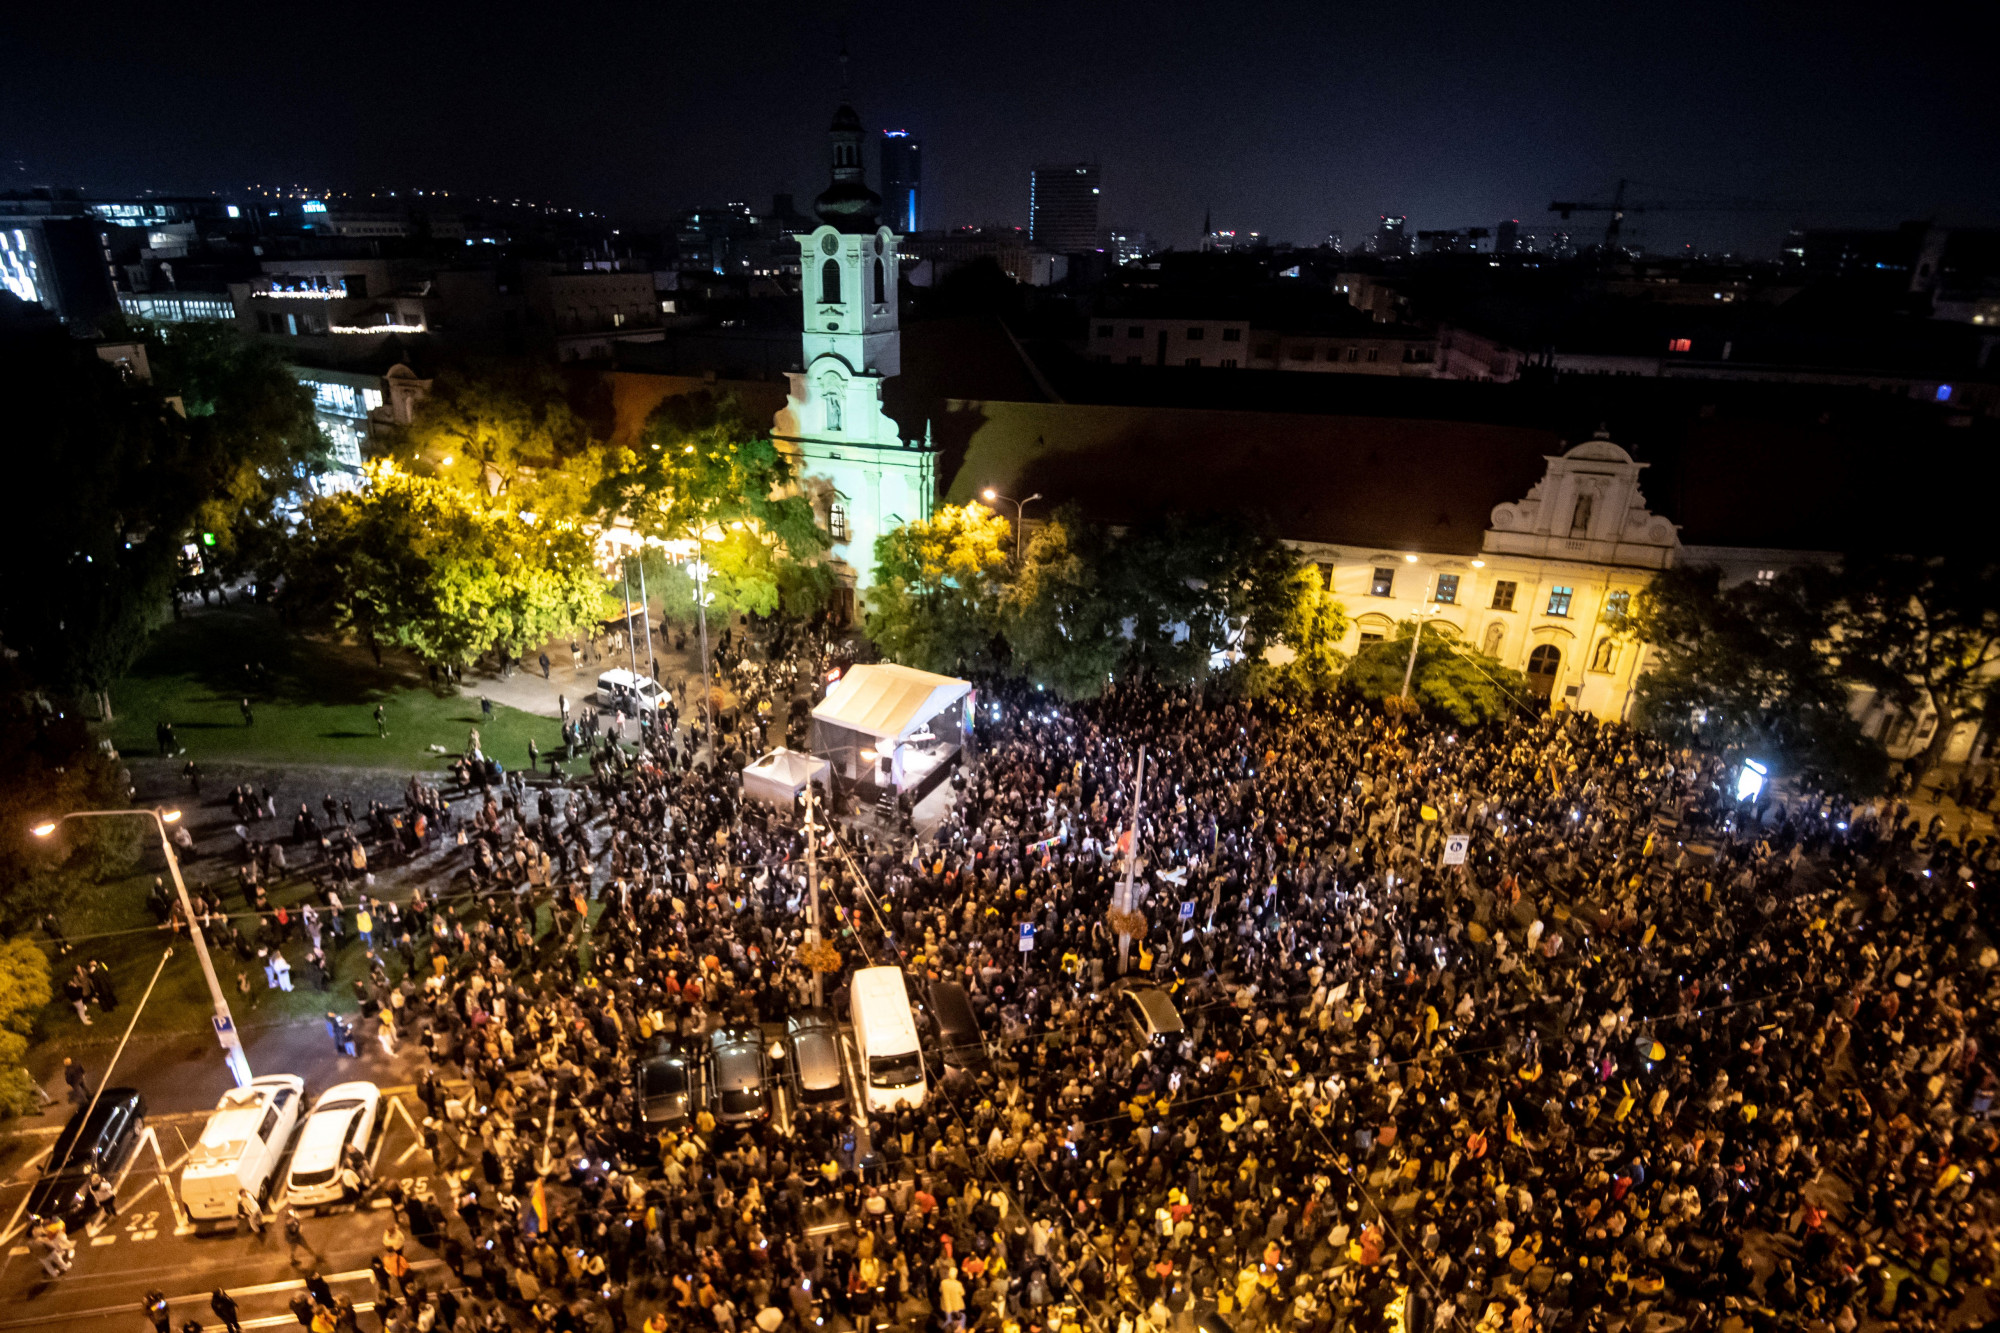 Több ezren virrasztottak Pozsonyban a melegbár előtt elkövetett merénylet miatt